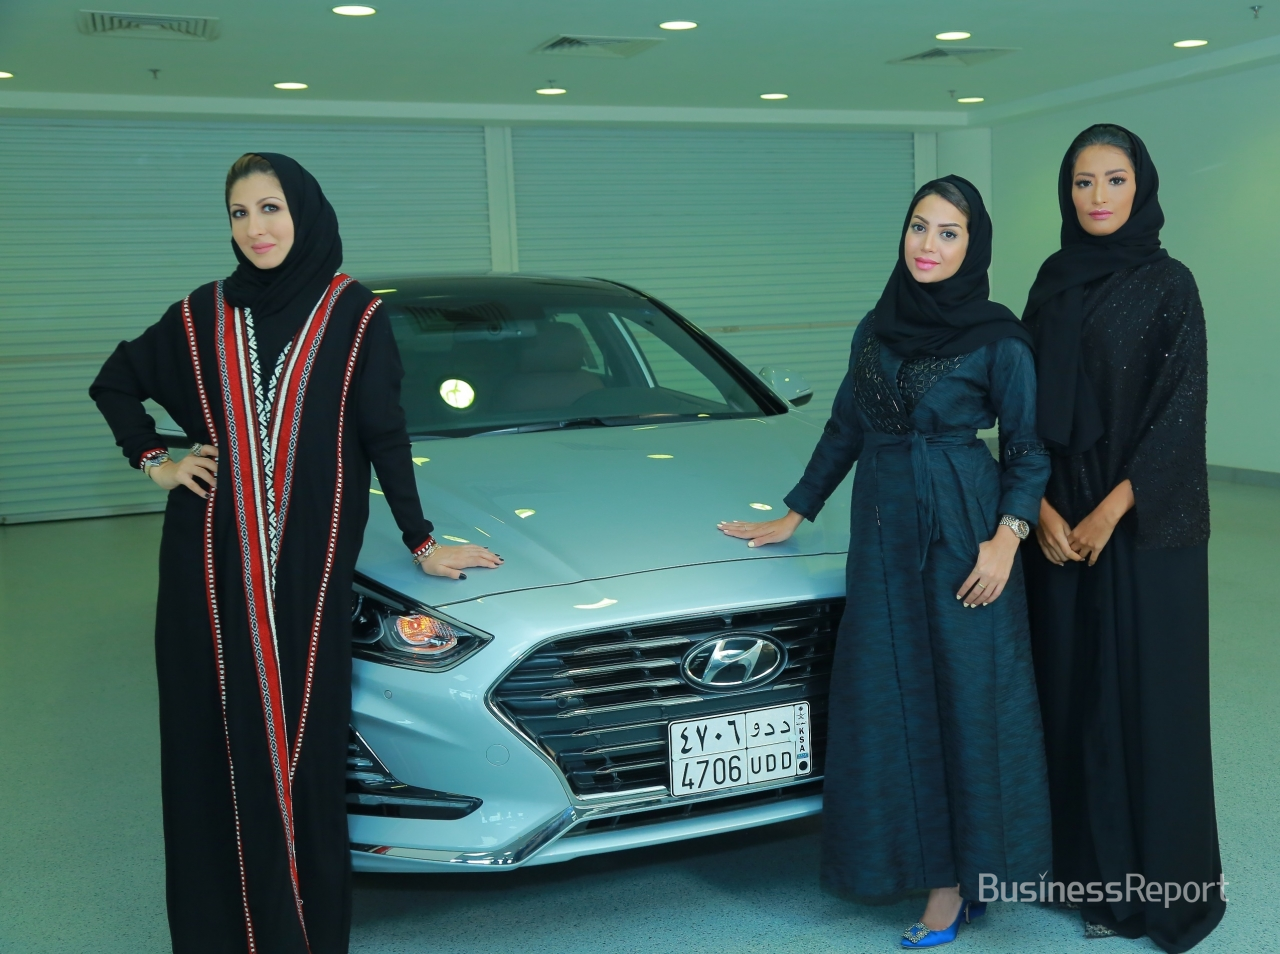 사우디아라비아의 현대자동차 브랜드 홍보대사로 선정된 (좌측부터) 패션 디자이너 림 파이잘(Reem Faisal), 사업가 바이안 린자위(Bayan Linjawi), 라디오 프로그램 진행자이자 여행 블로거인 샤디아 압둘 아지즈(Shadia Abdulaziz).(사진제공=현대차)